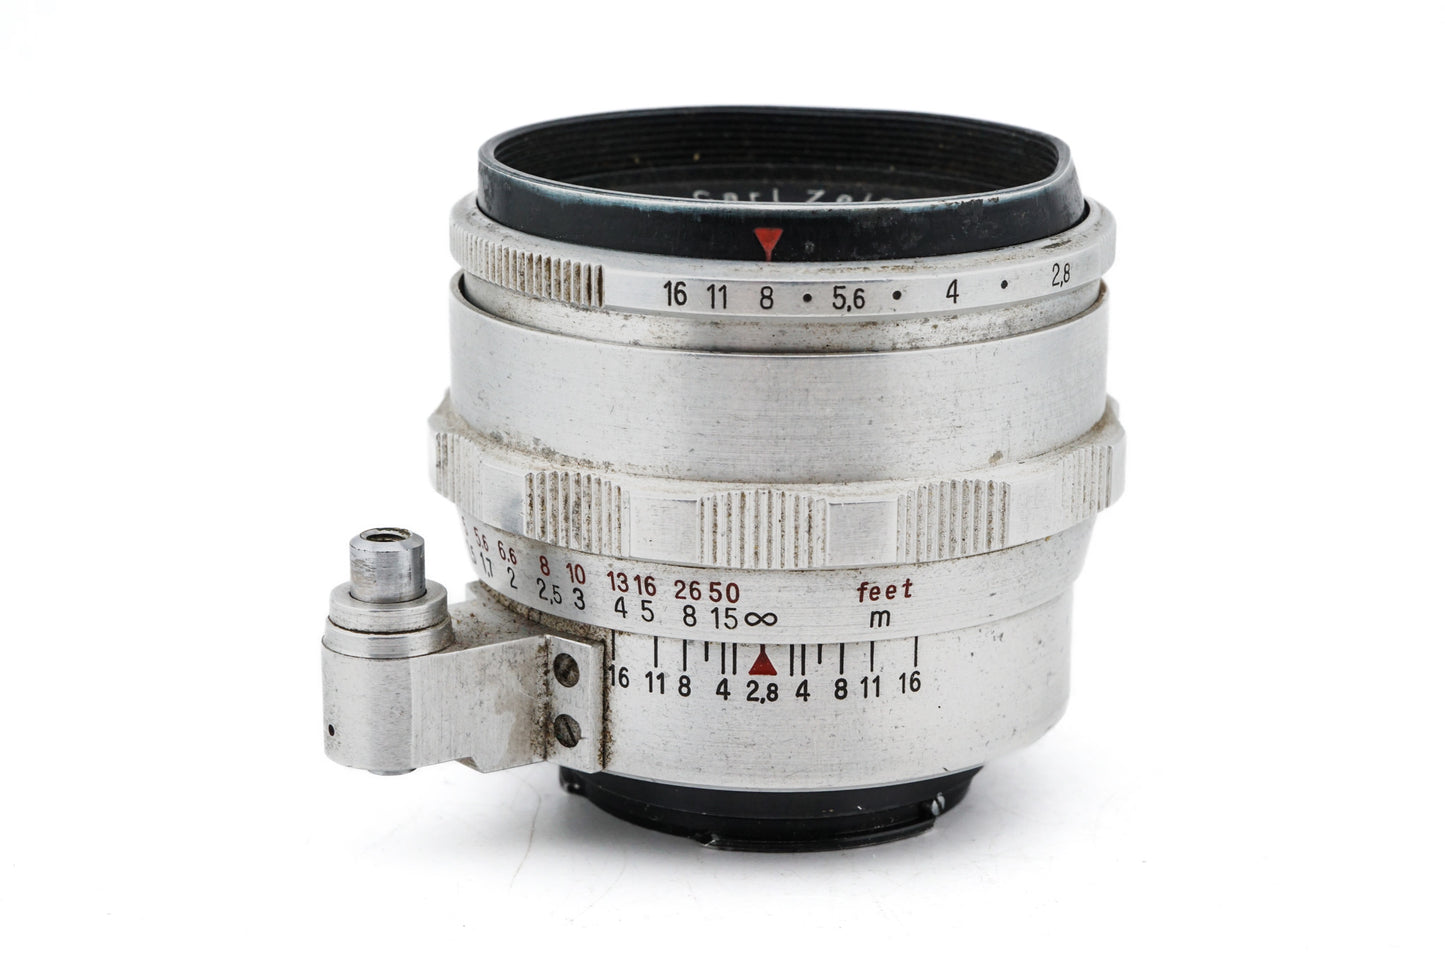 Carl Zeiss 50mm f2.8 Tessar T Jena - Lens